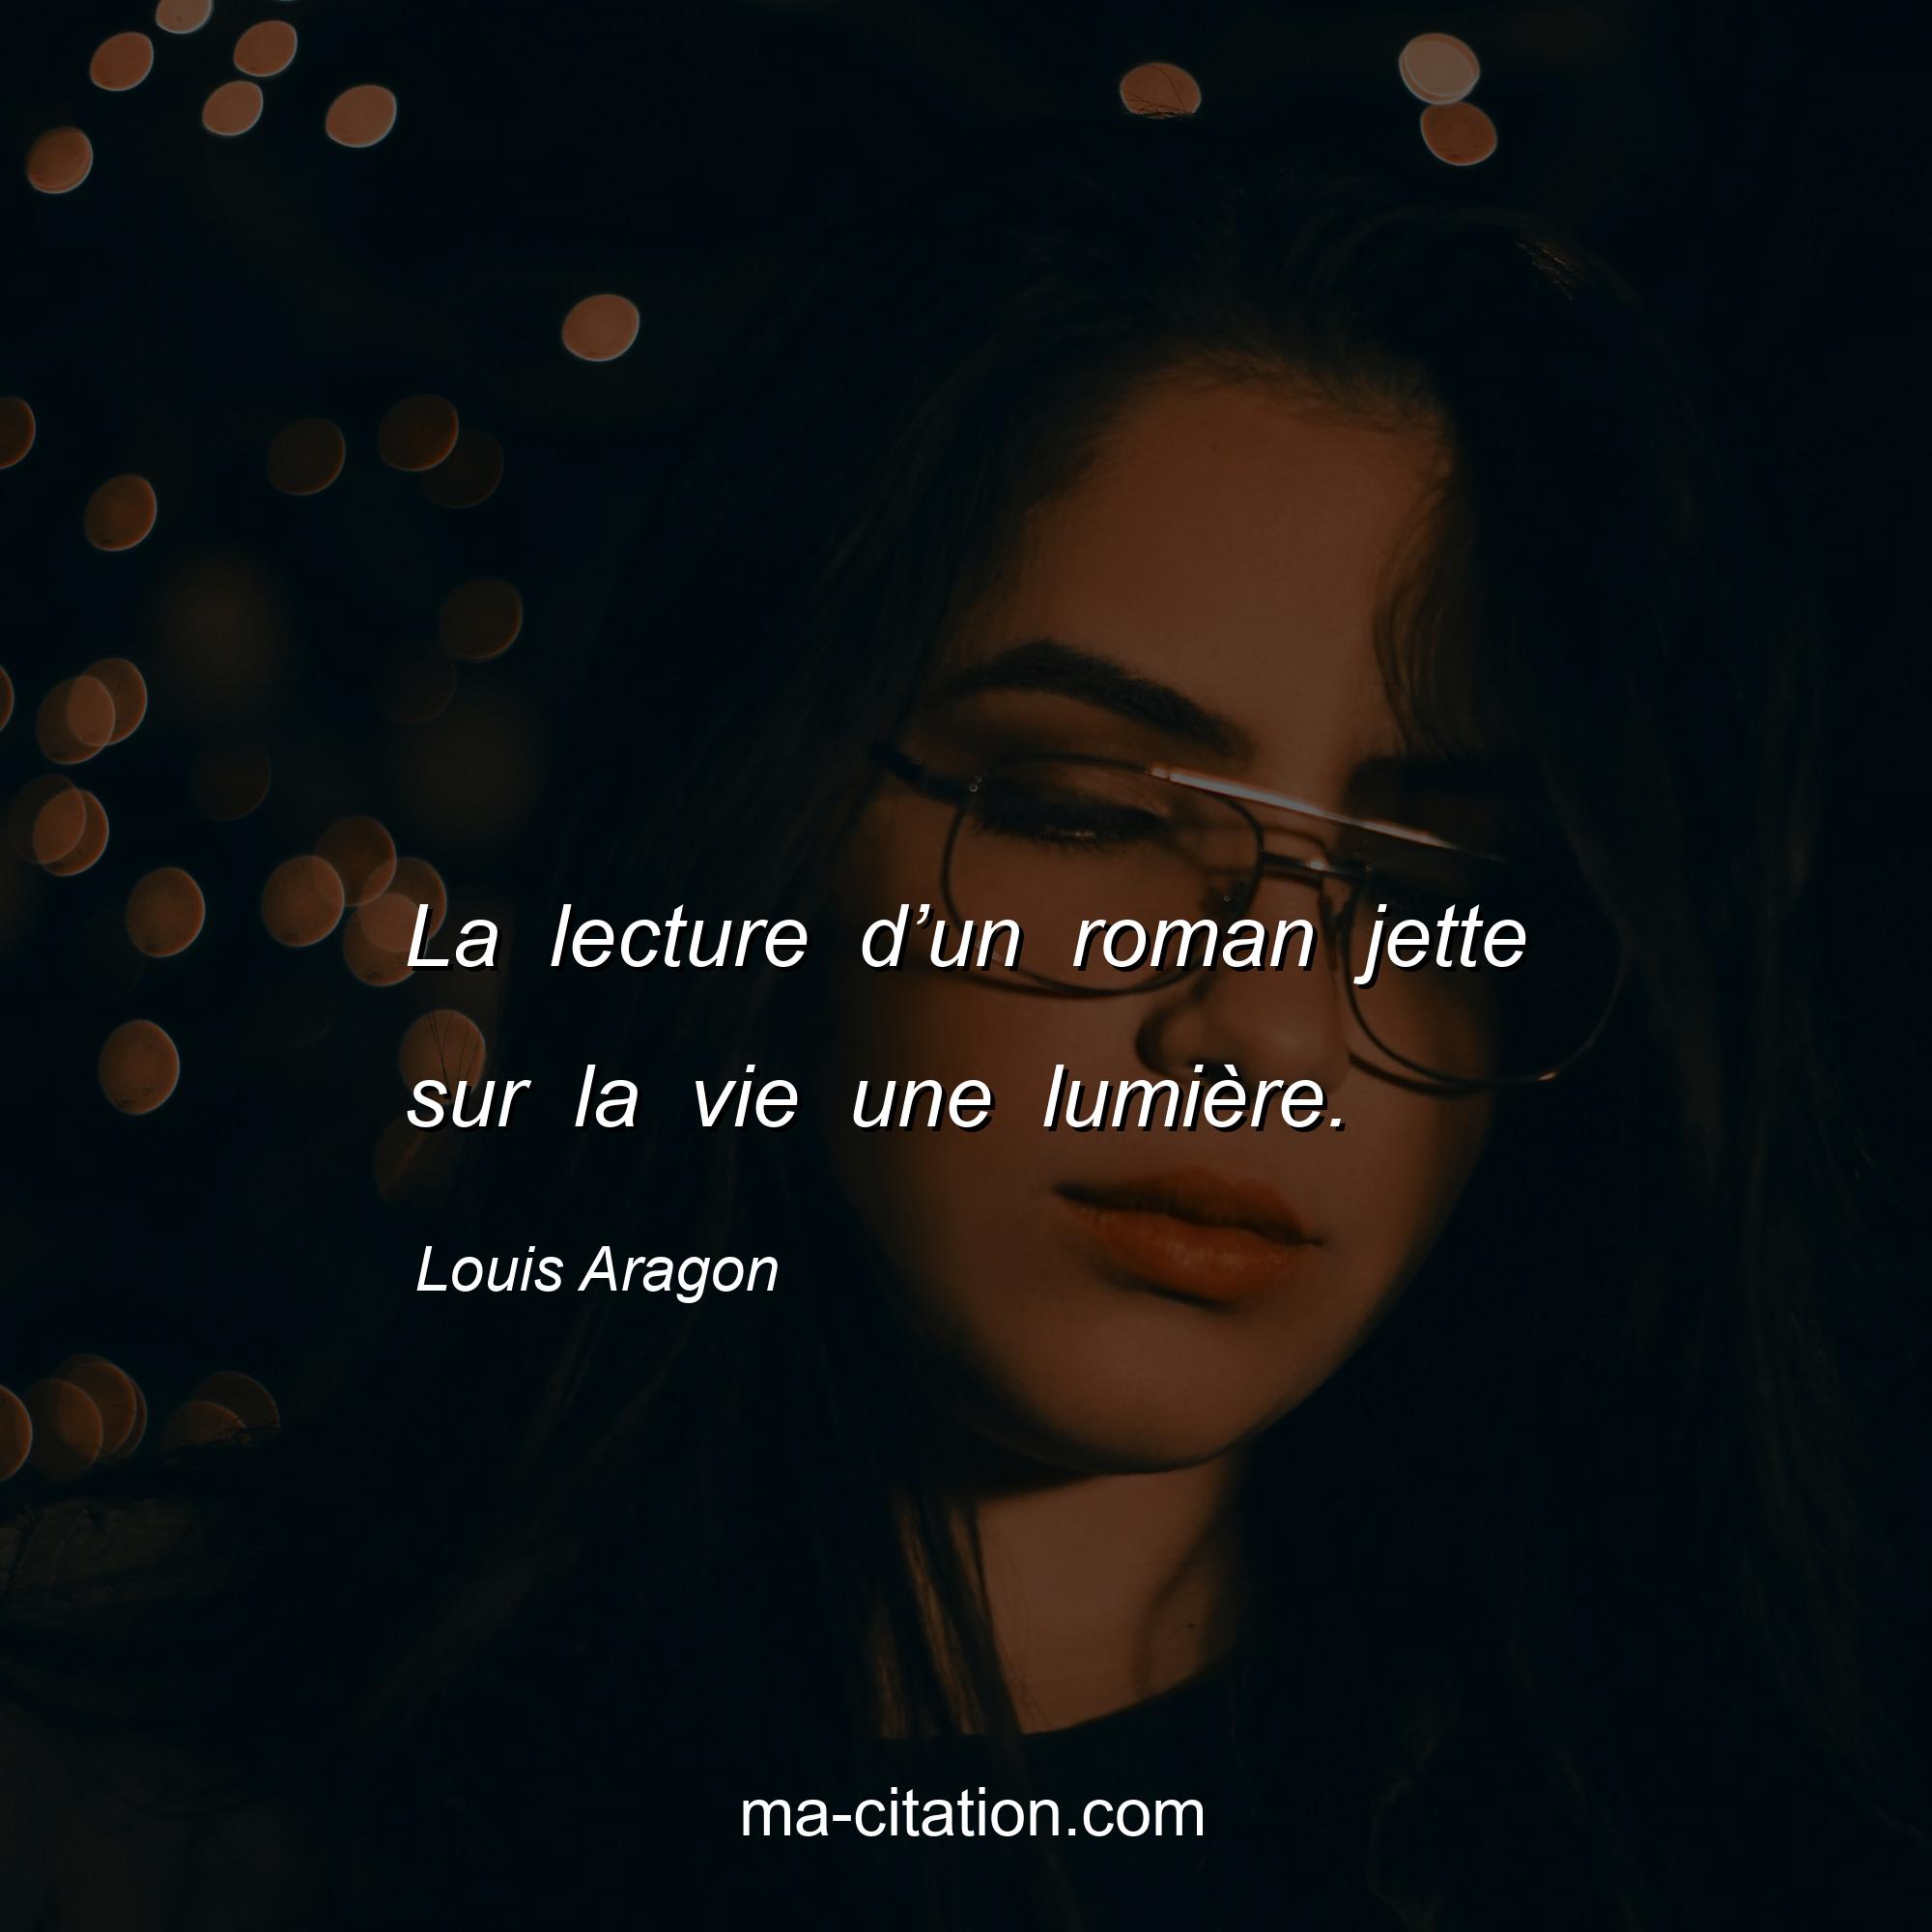 Louis Aragon : La lecture d’un roman jette sur la vie une lumière.